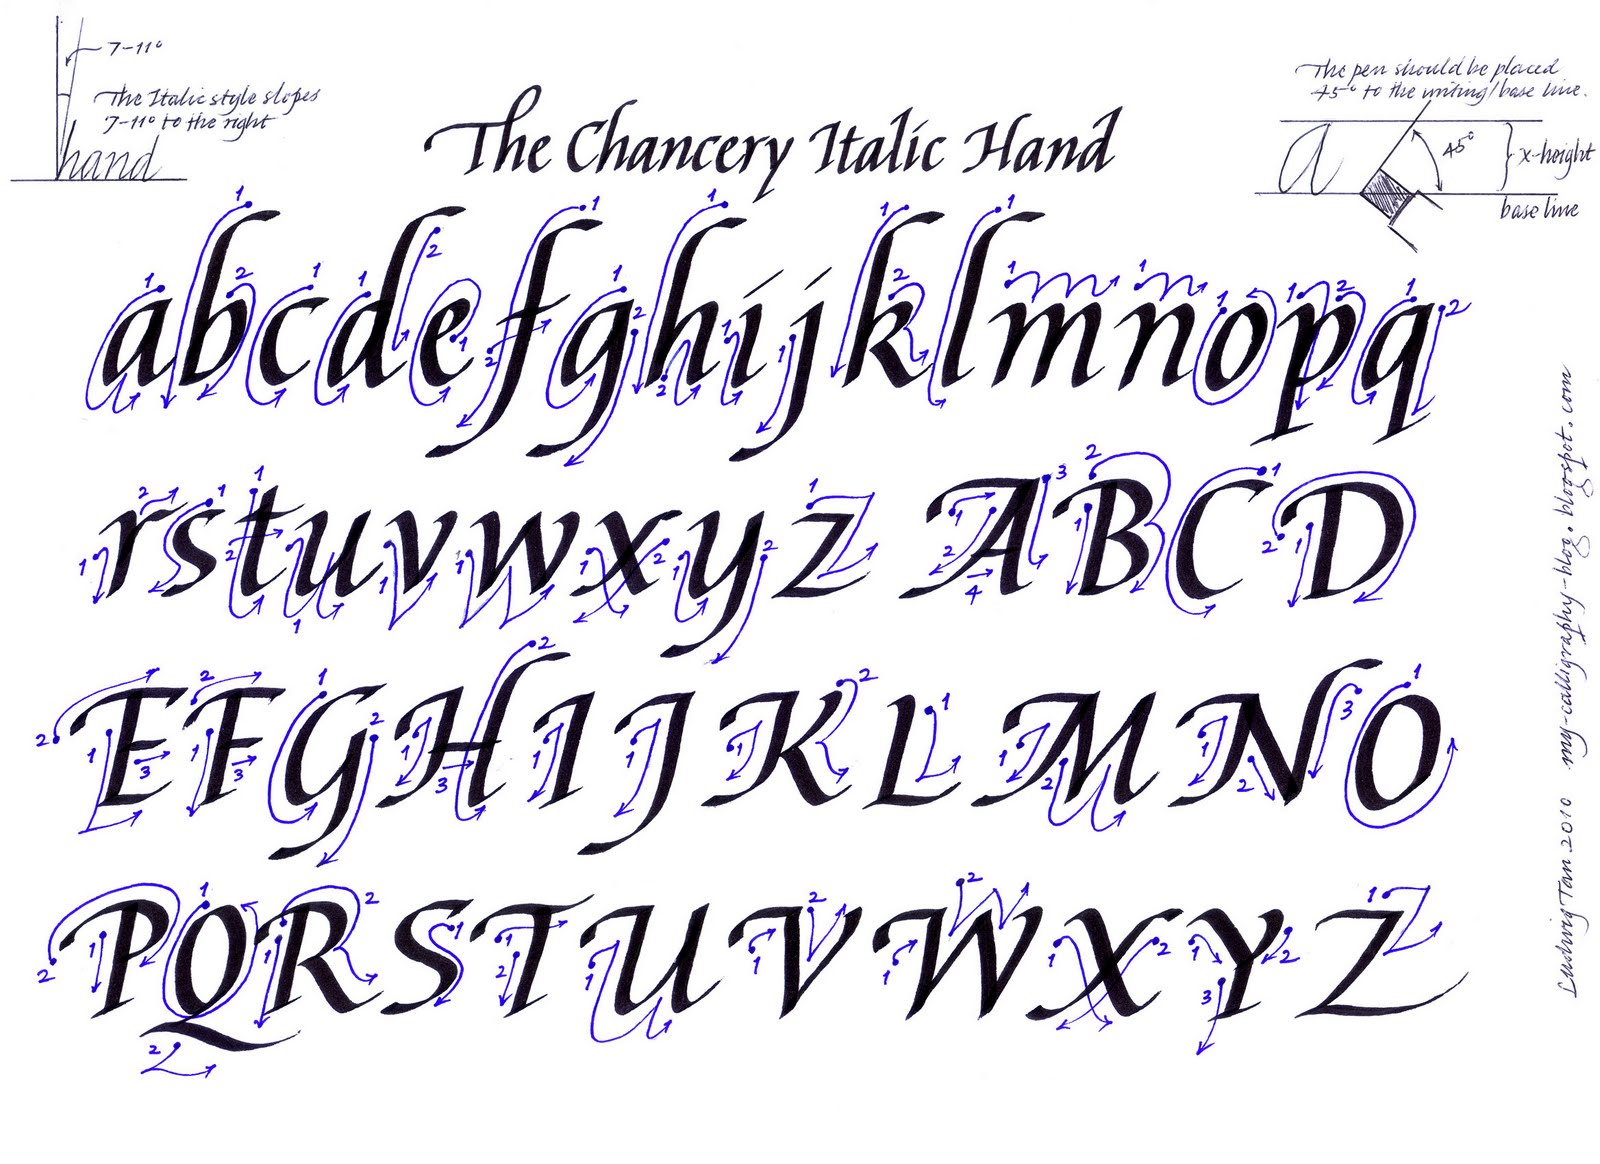 Calligraphy Alphabet